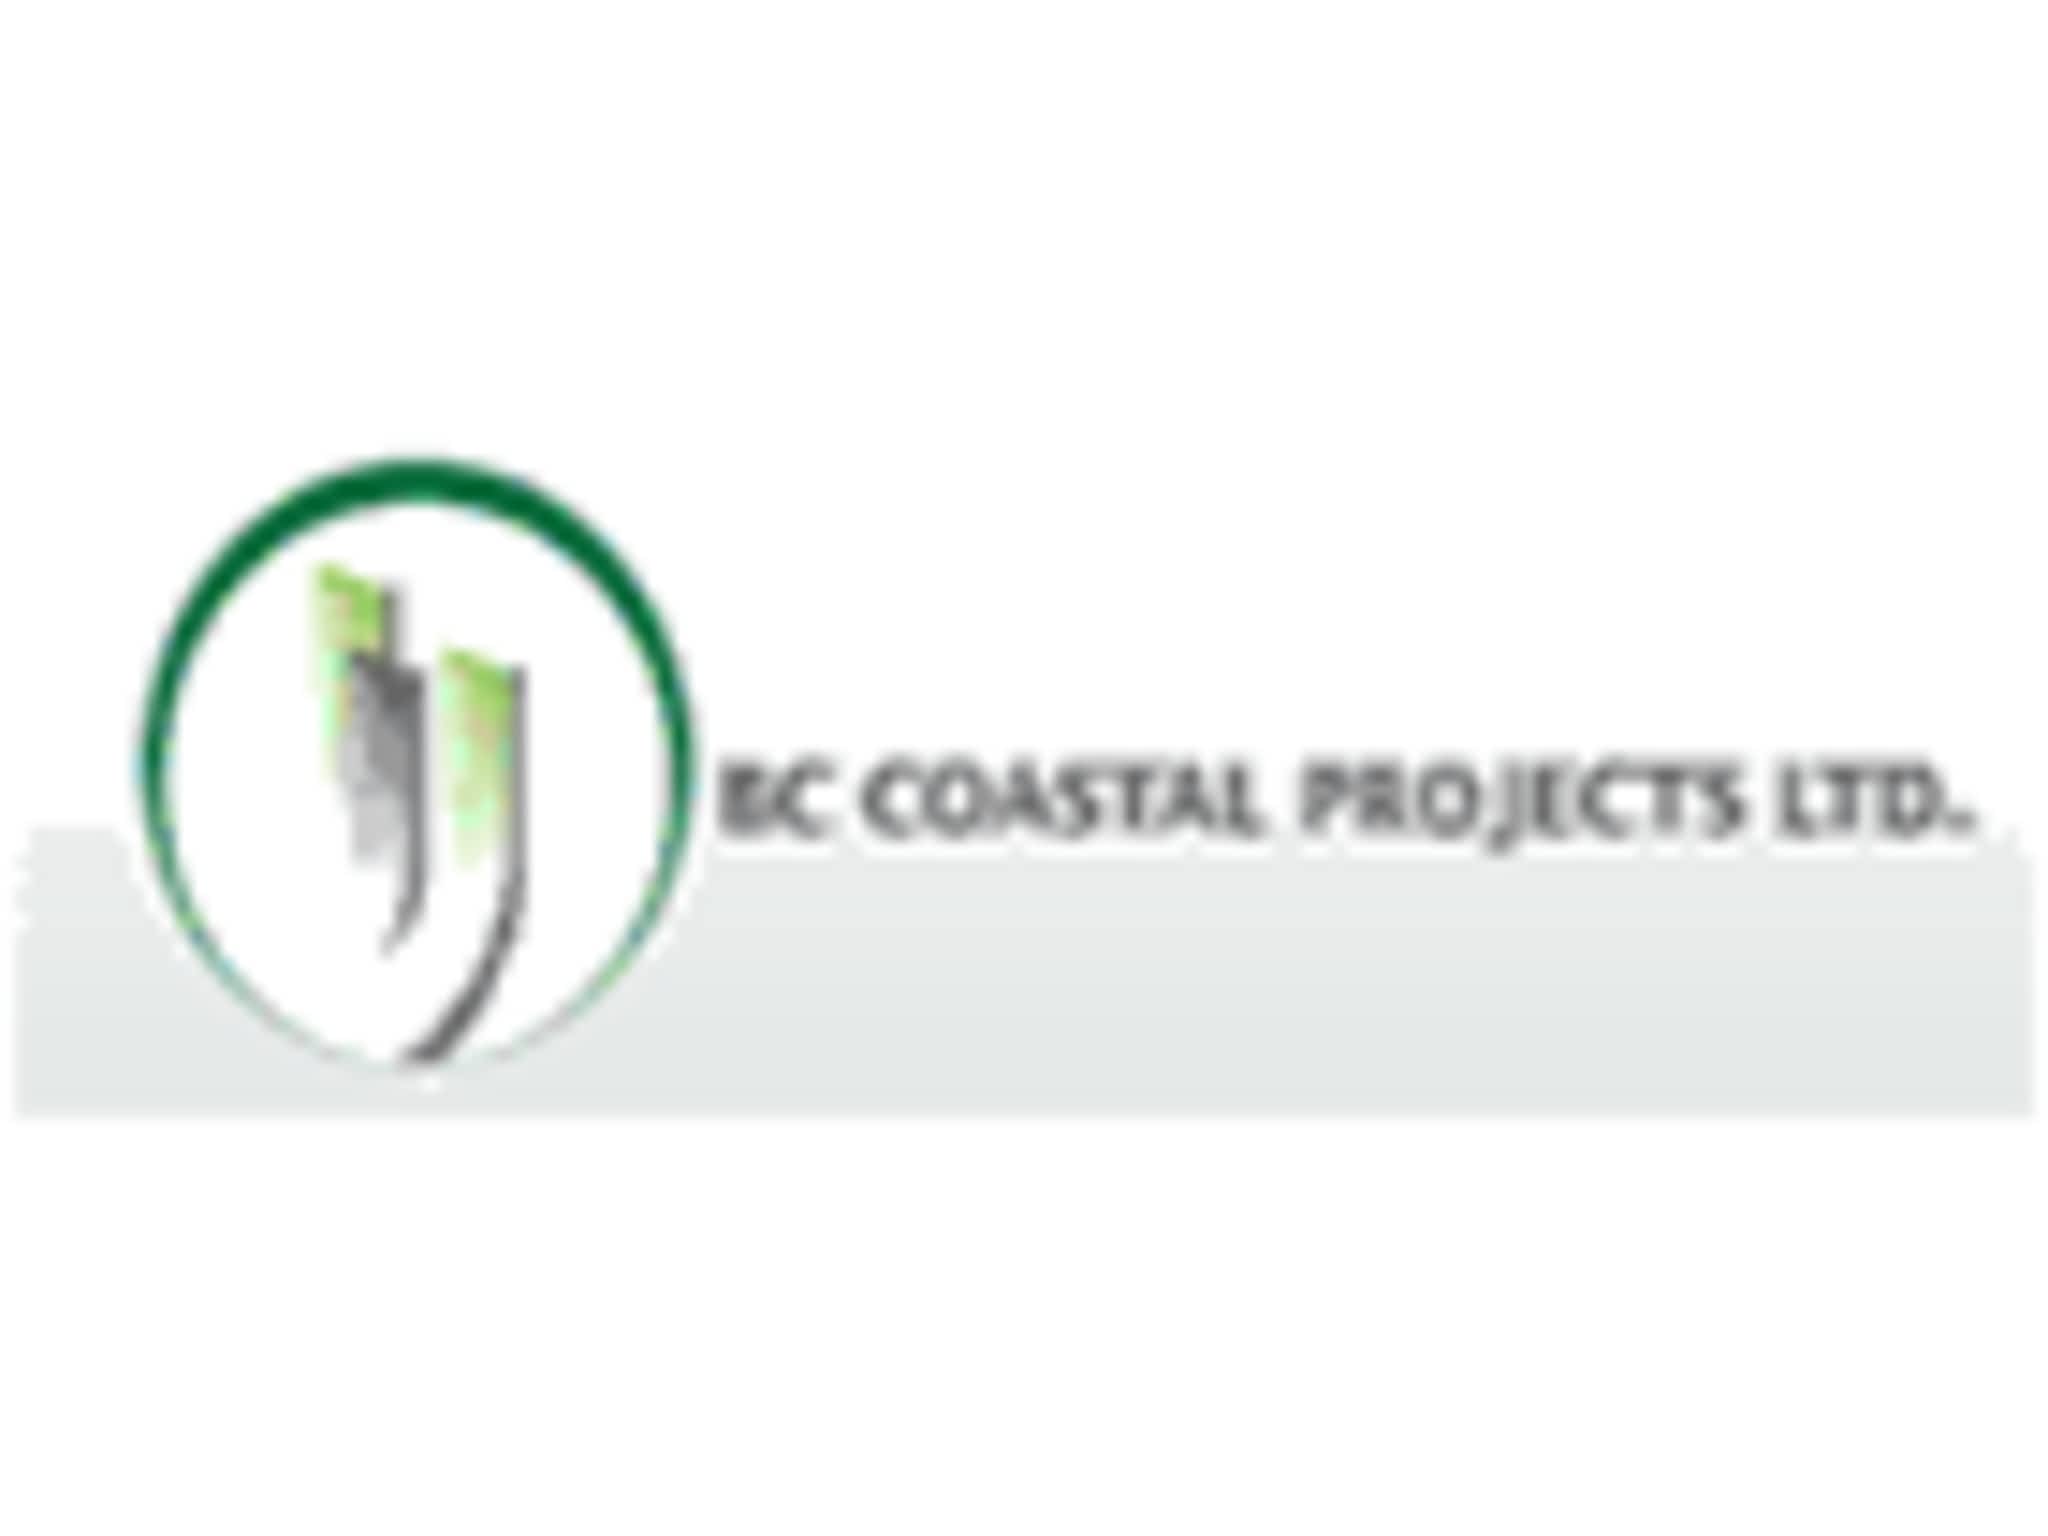 photo BC Coastal Projects Ltd